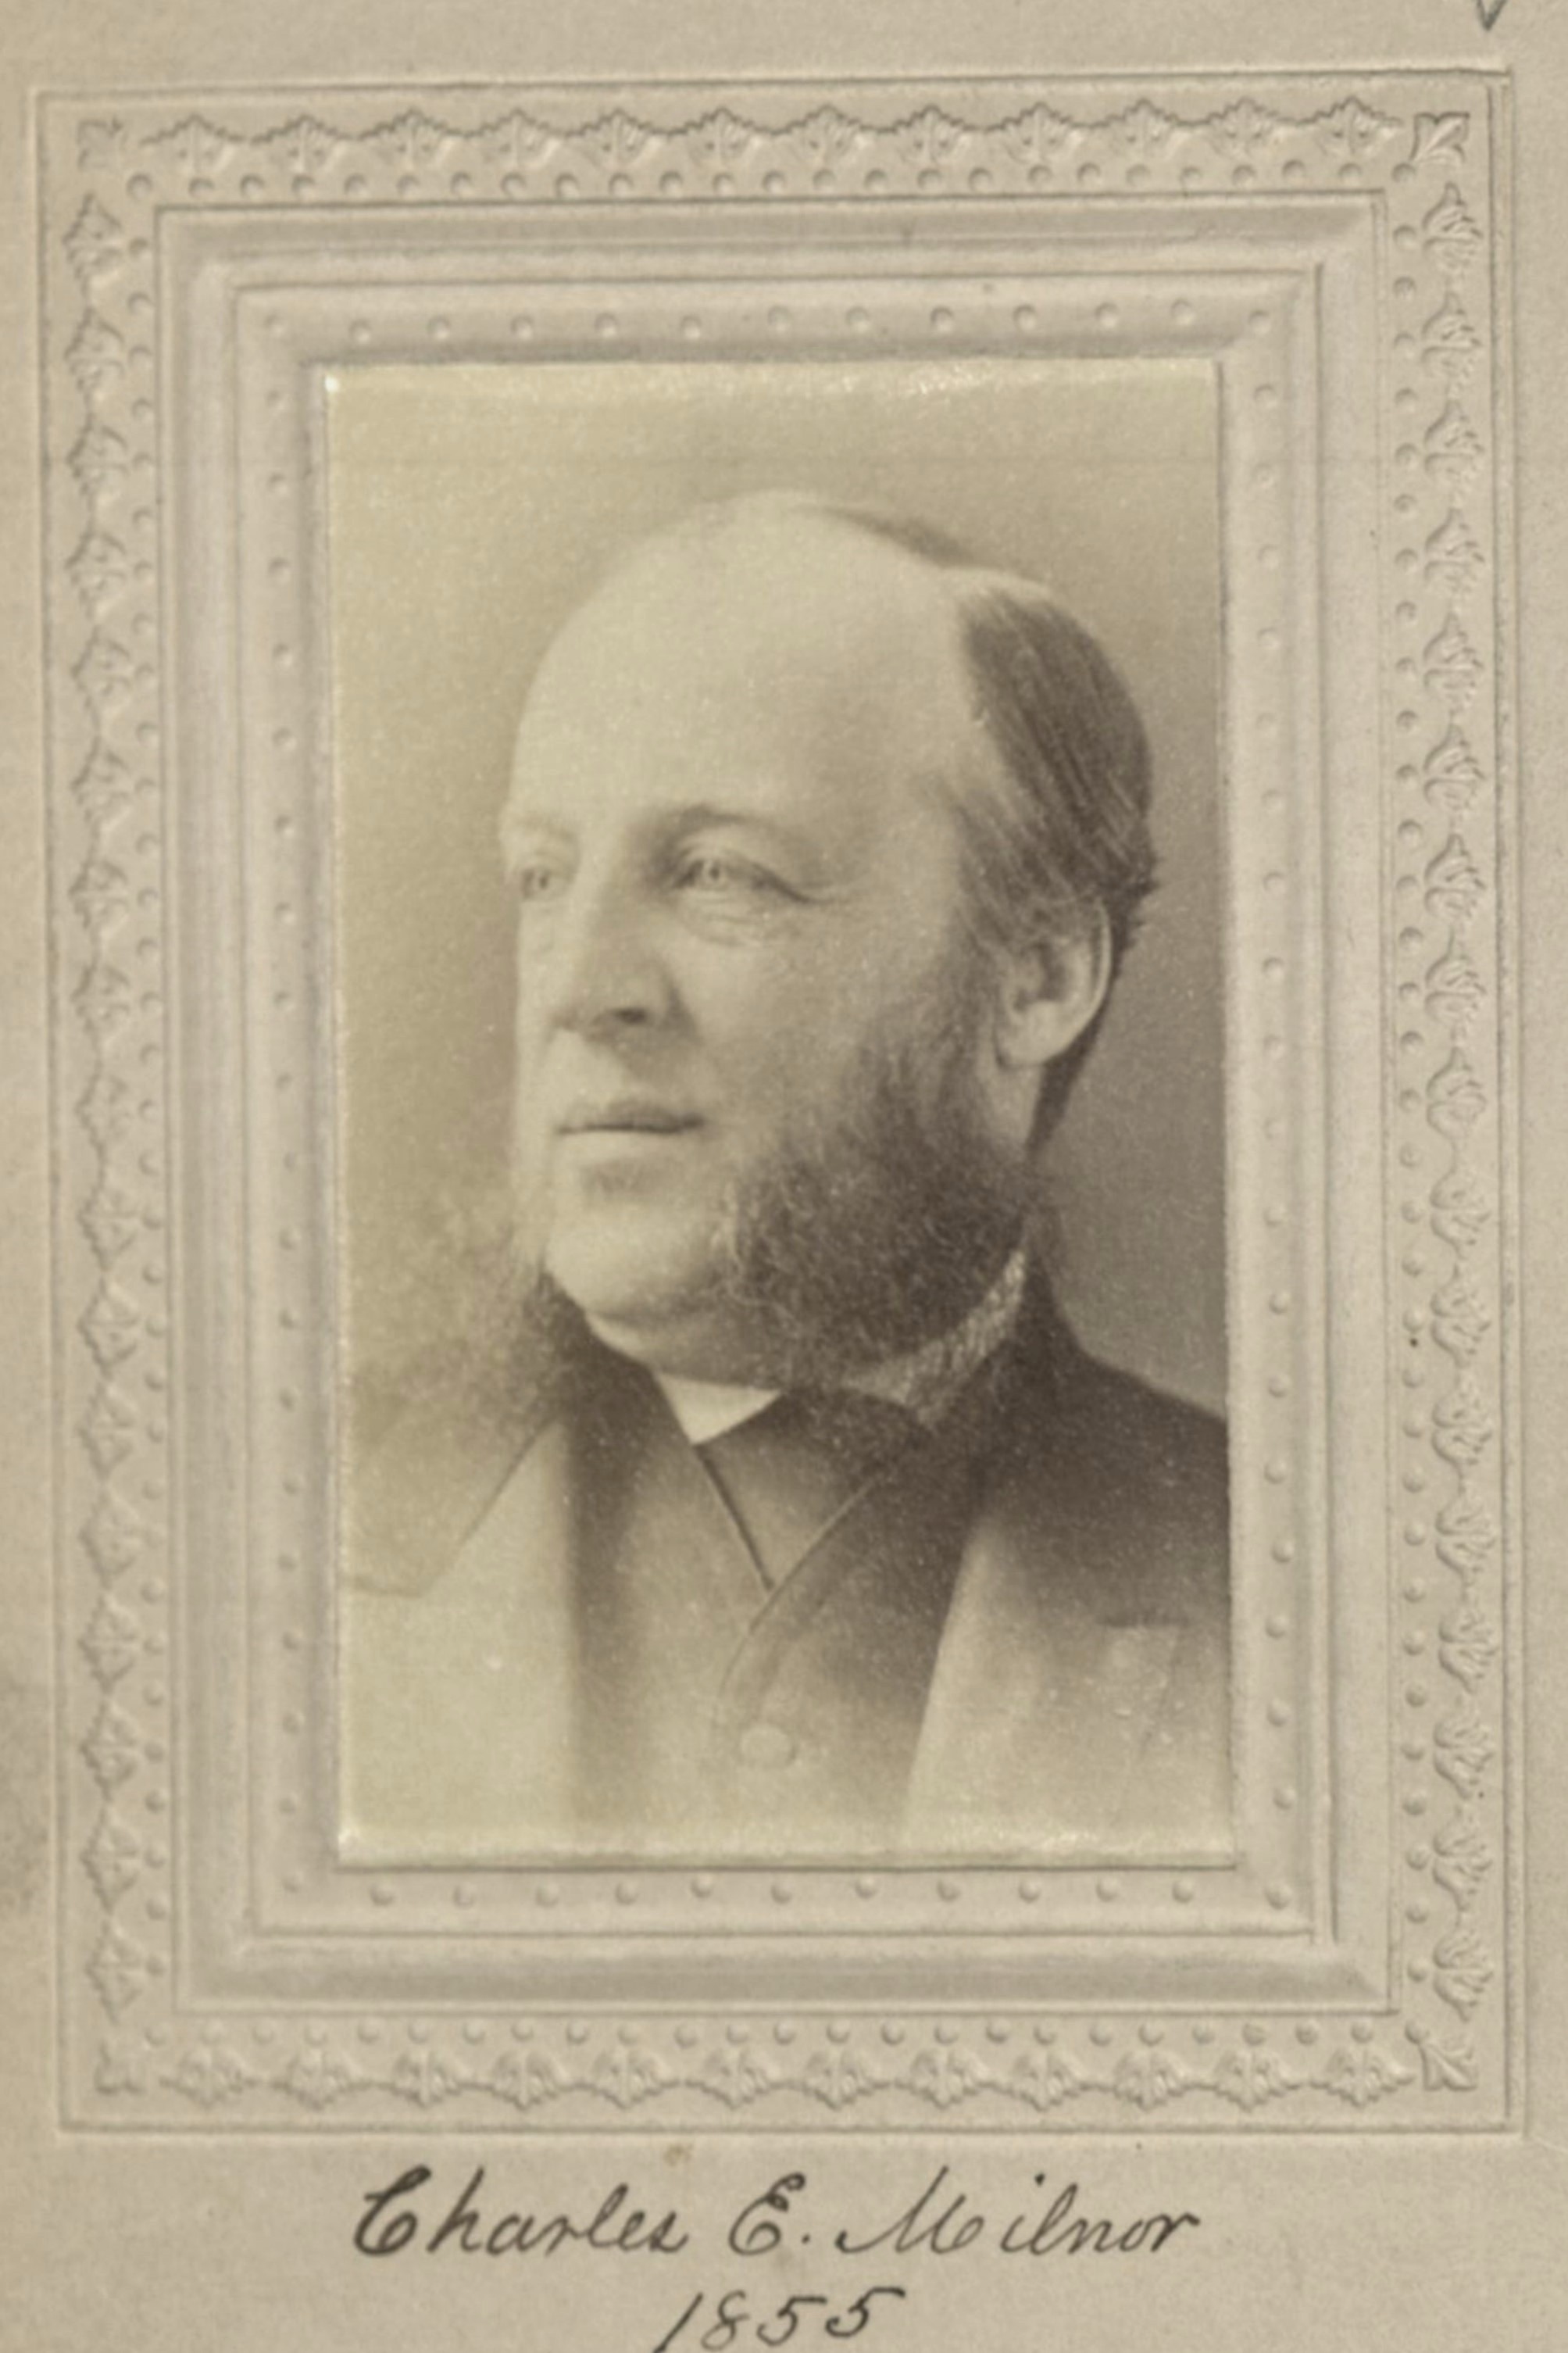 Member portrait of Charles E. Milnor